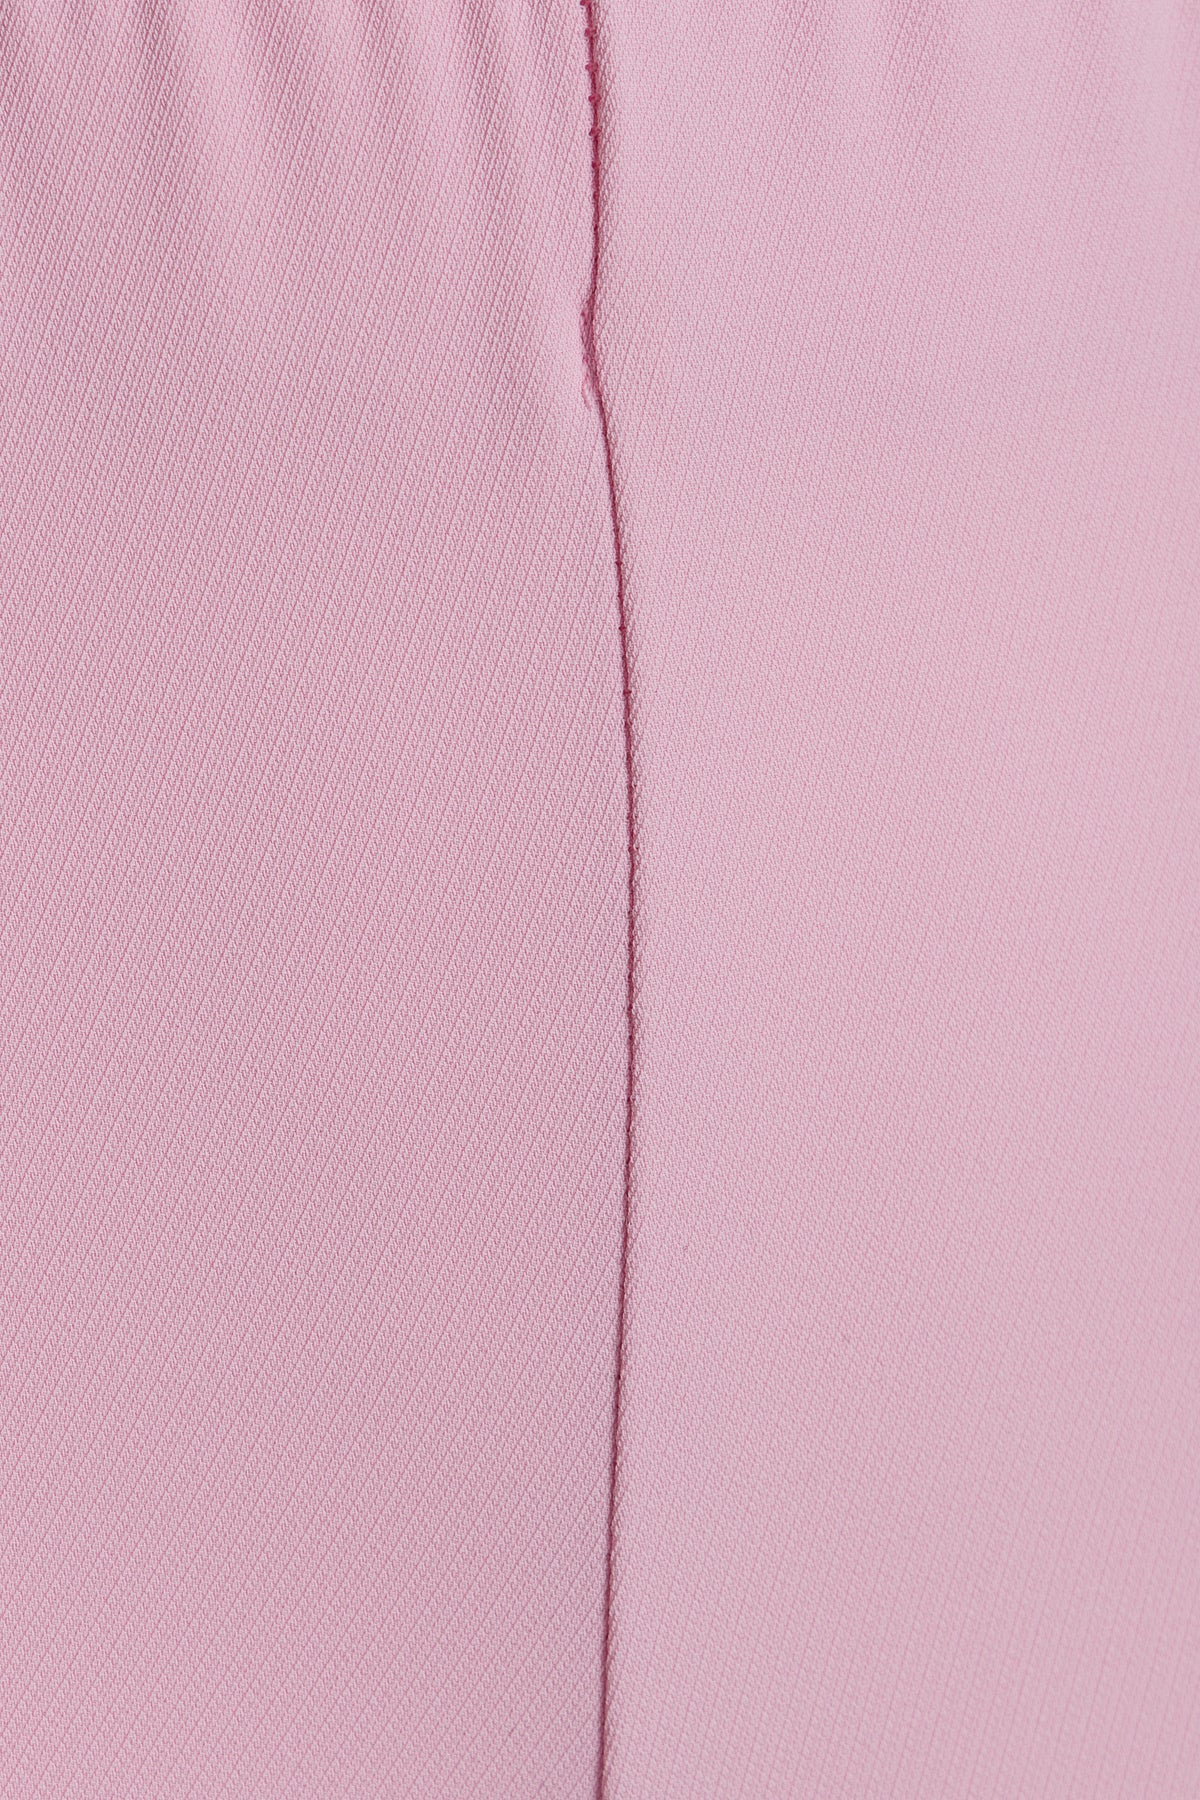 Pantaloni palazzo rosa